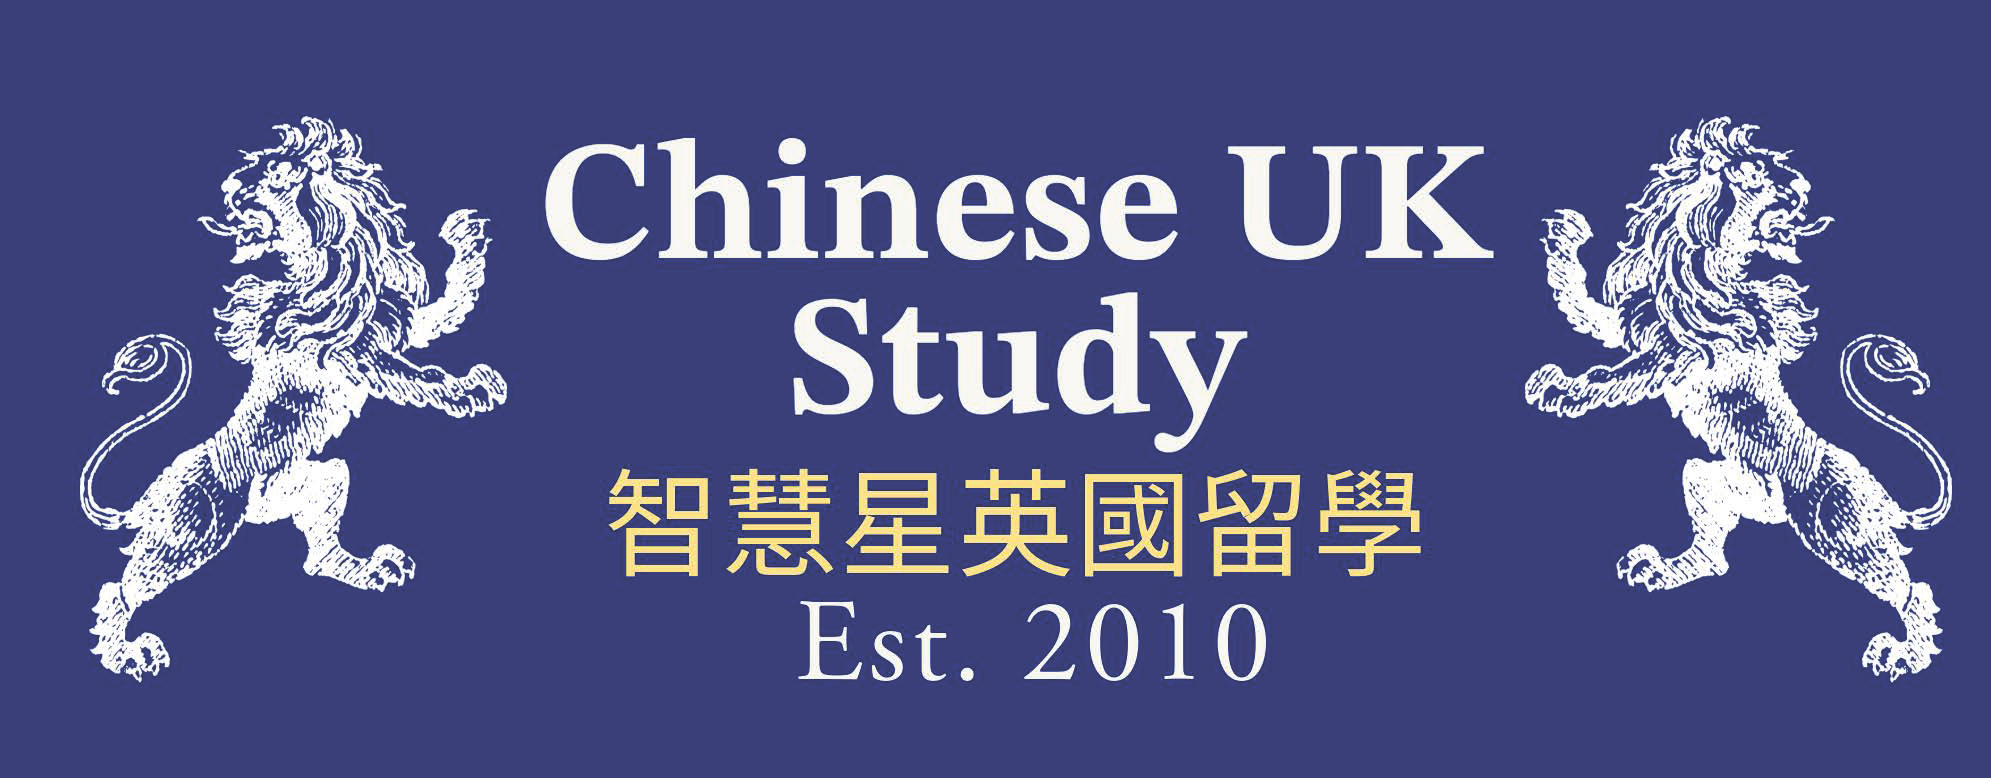 Chinese UK Study Company Limited